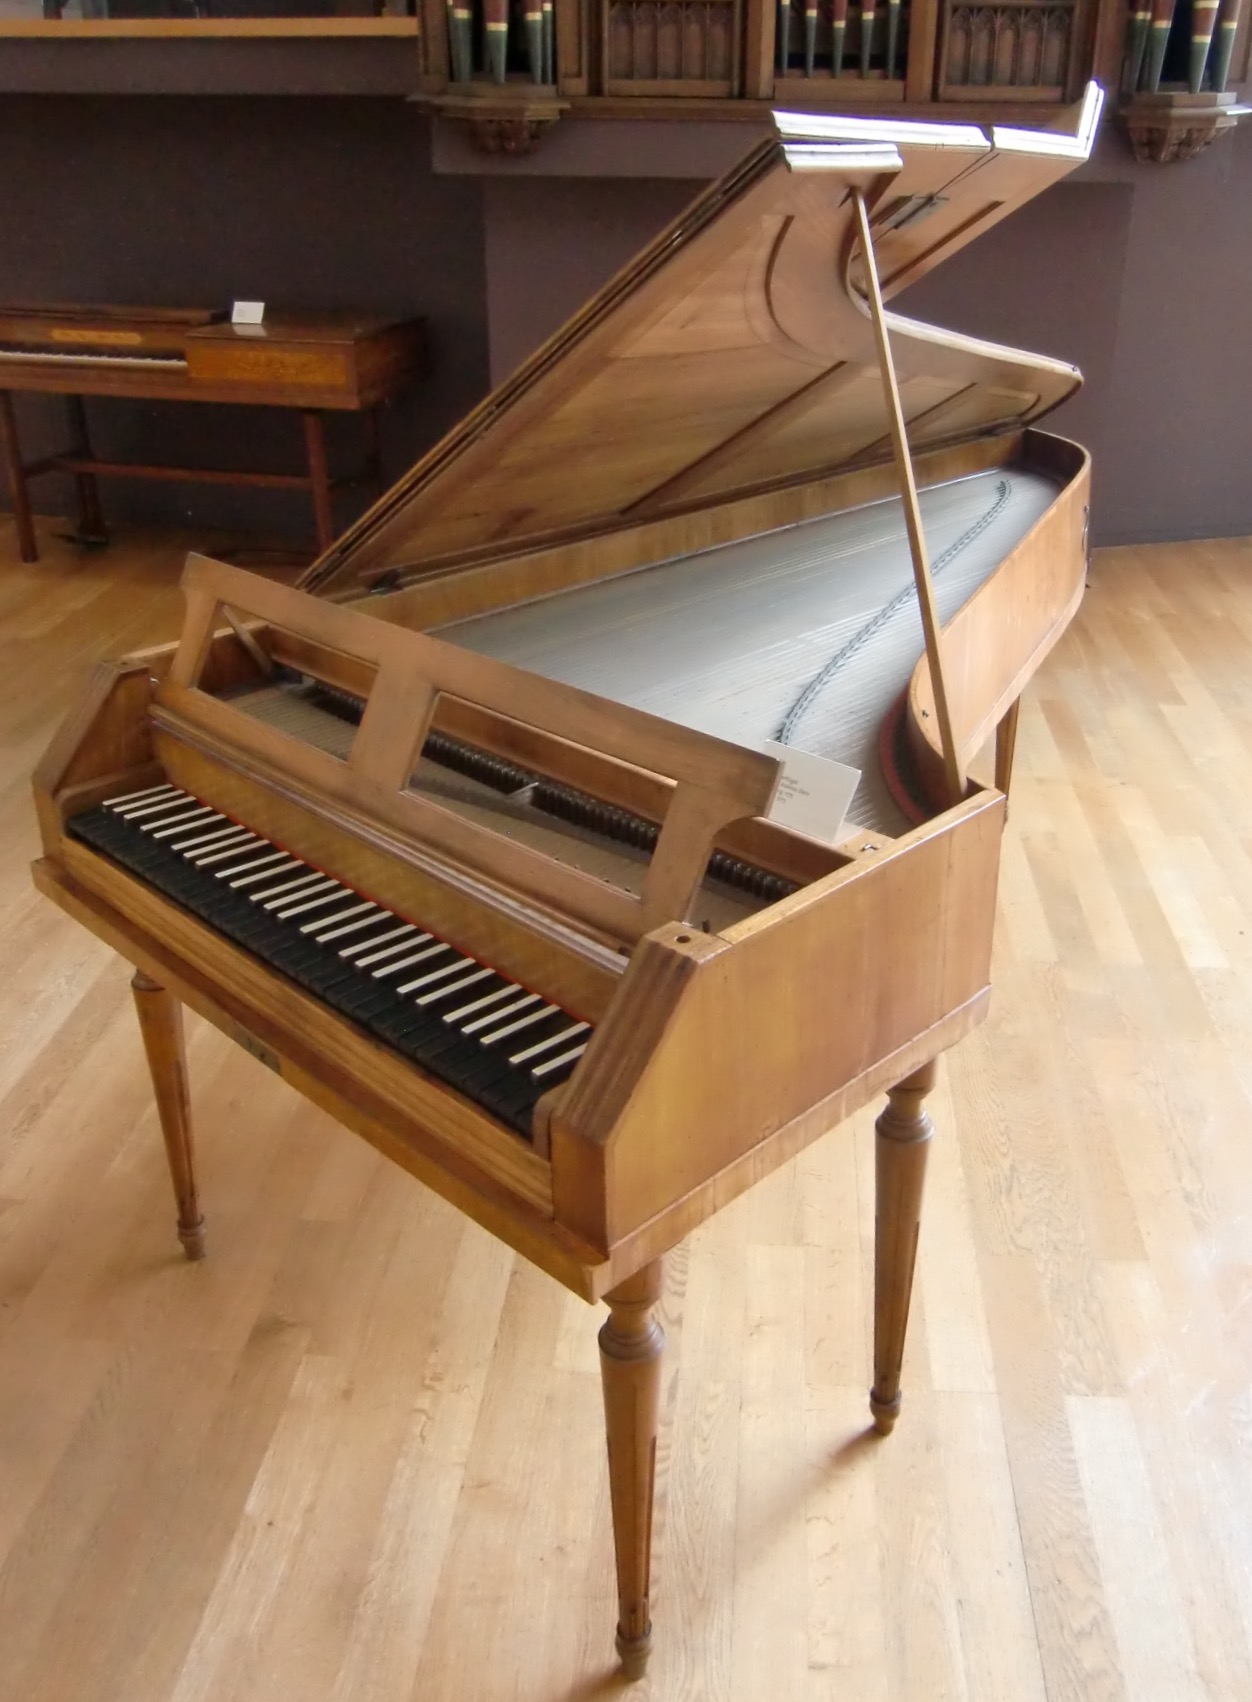 Piano pedals - Wikipedia